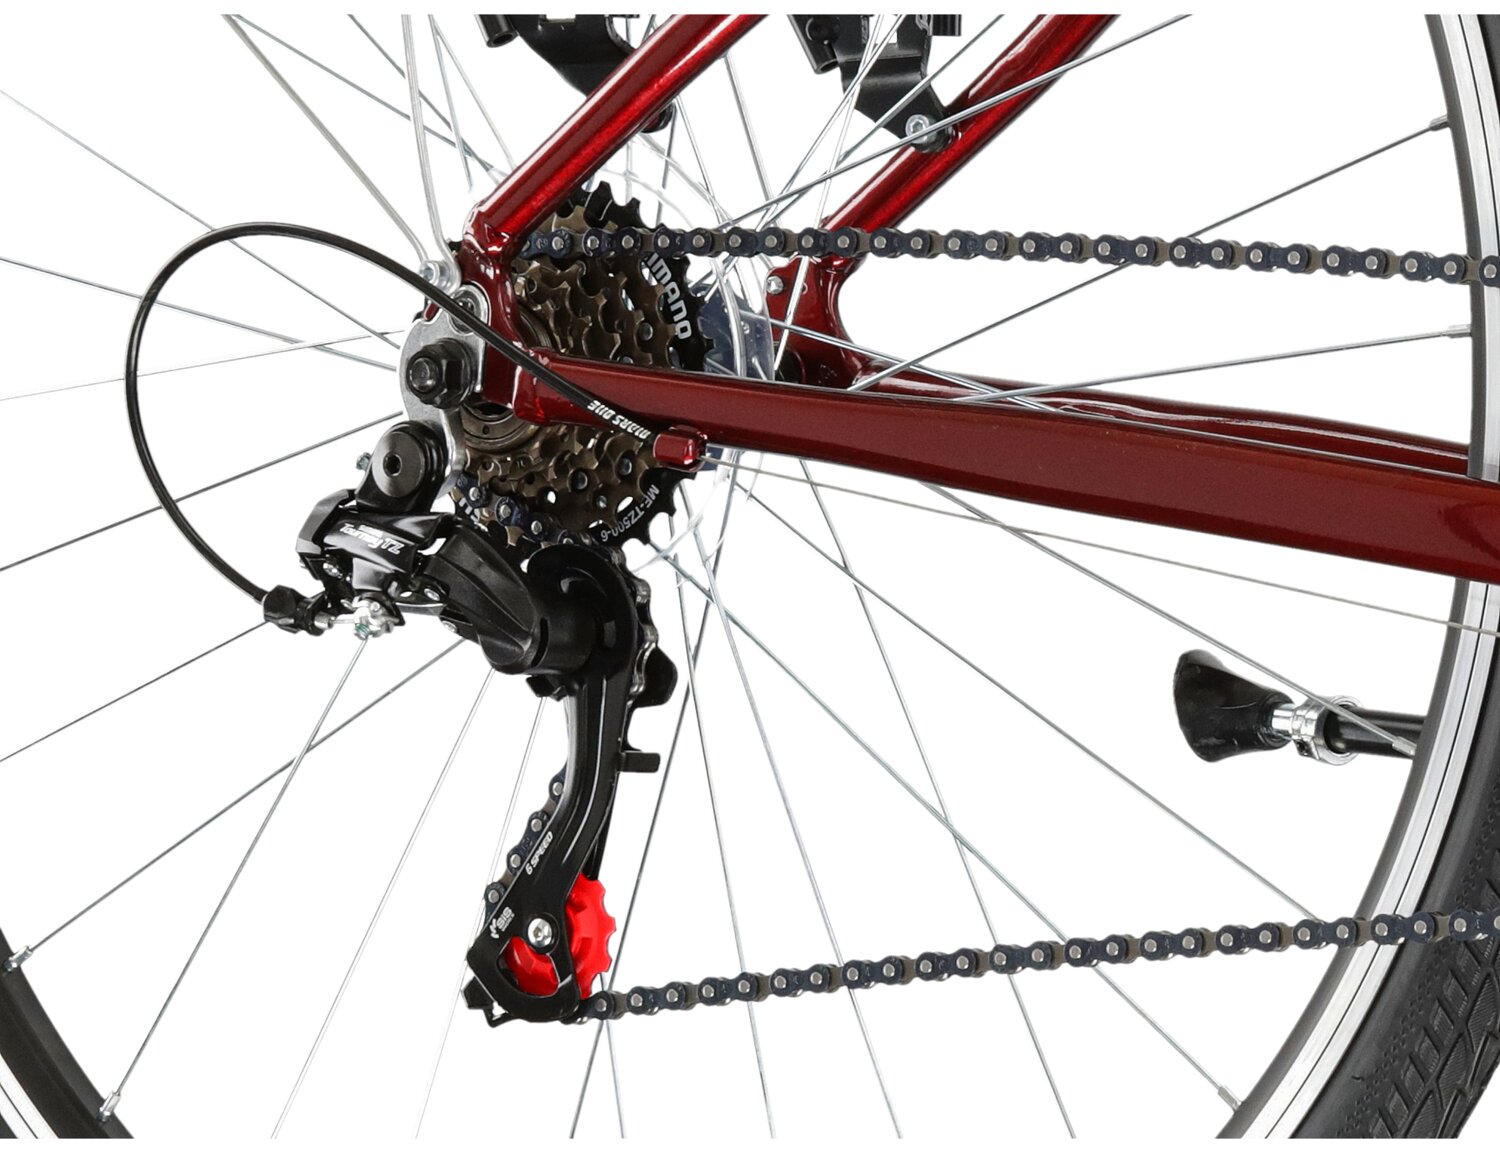  Tylna sześciobiegowa przerzutka Shimano Tourney TZ500 oraz hamulce v-brake w rowerze miejskim KROSS Sentio 1.0 